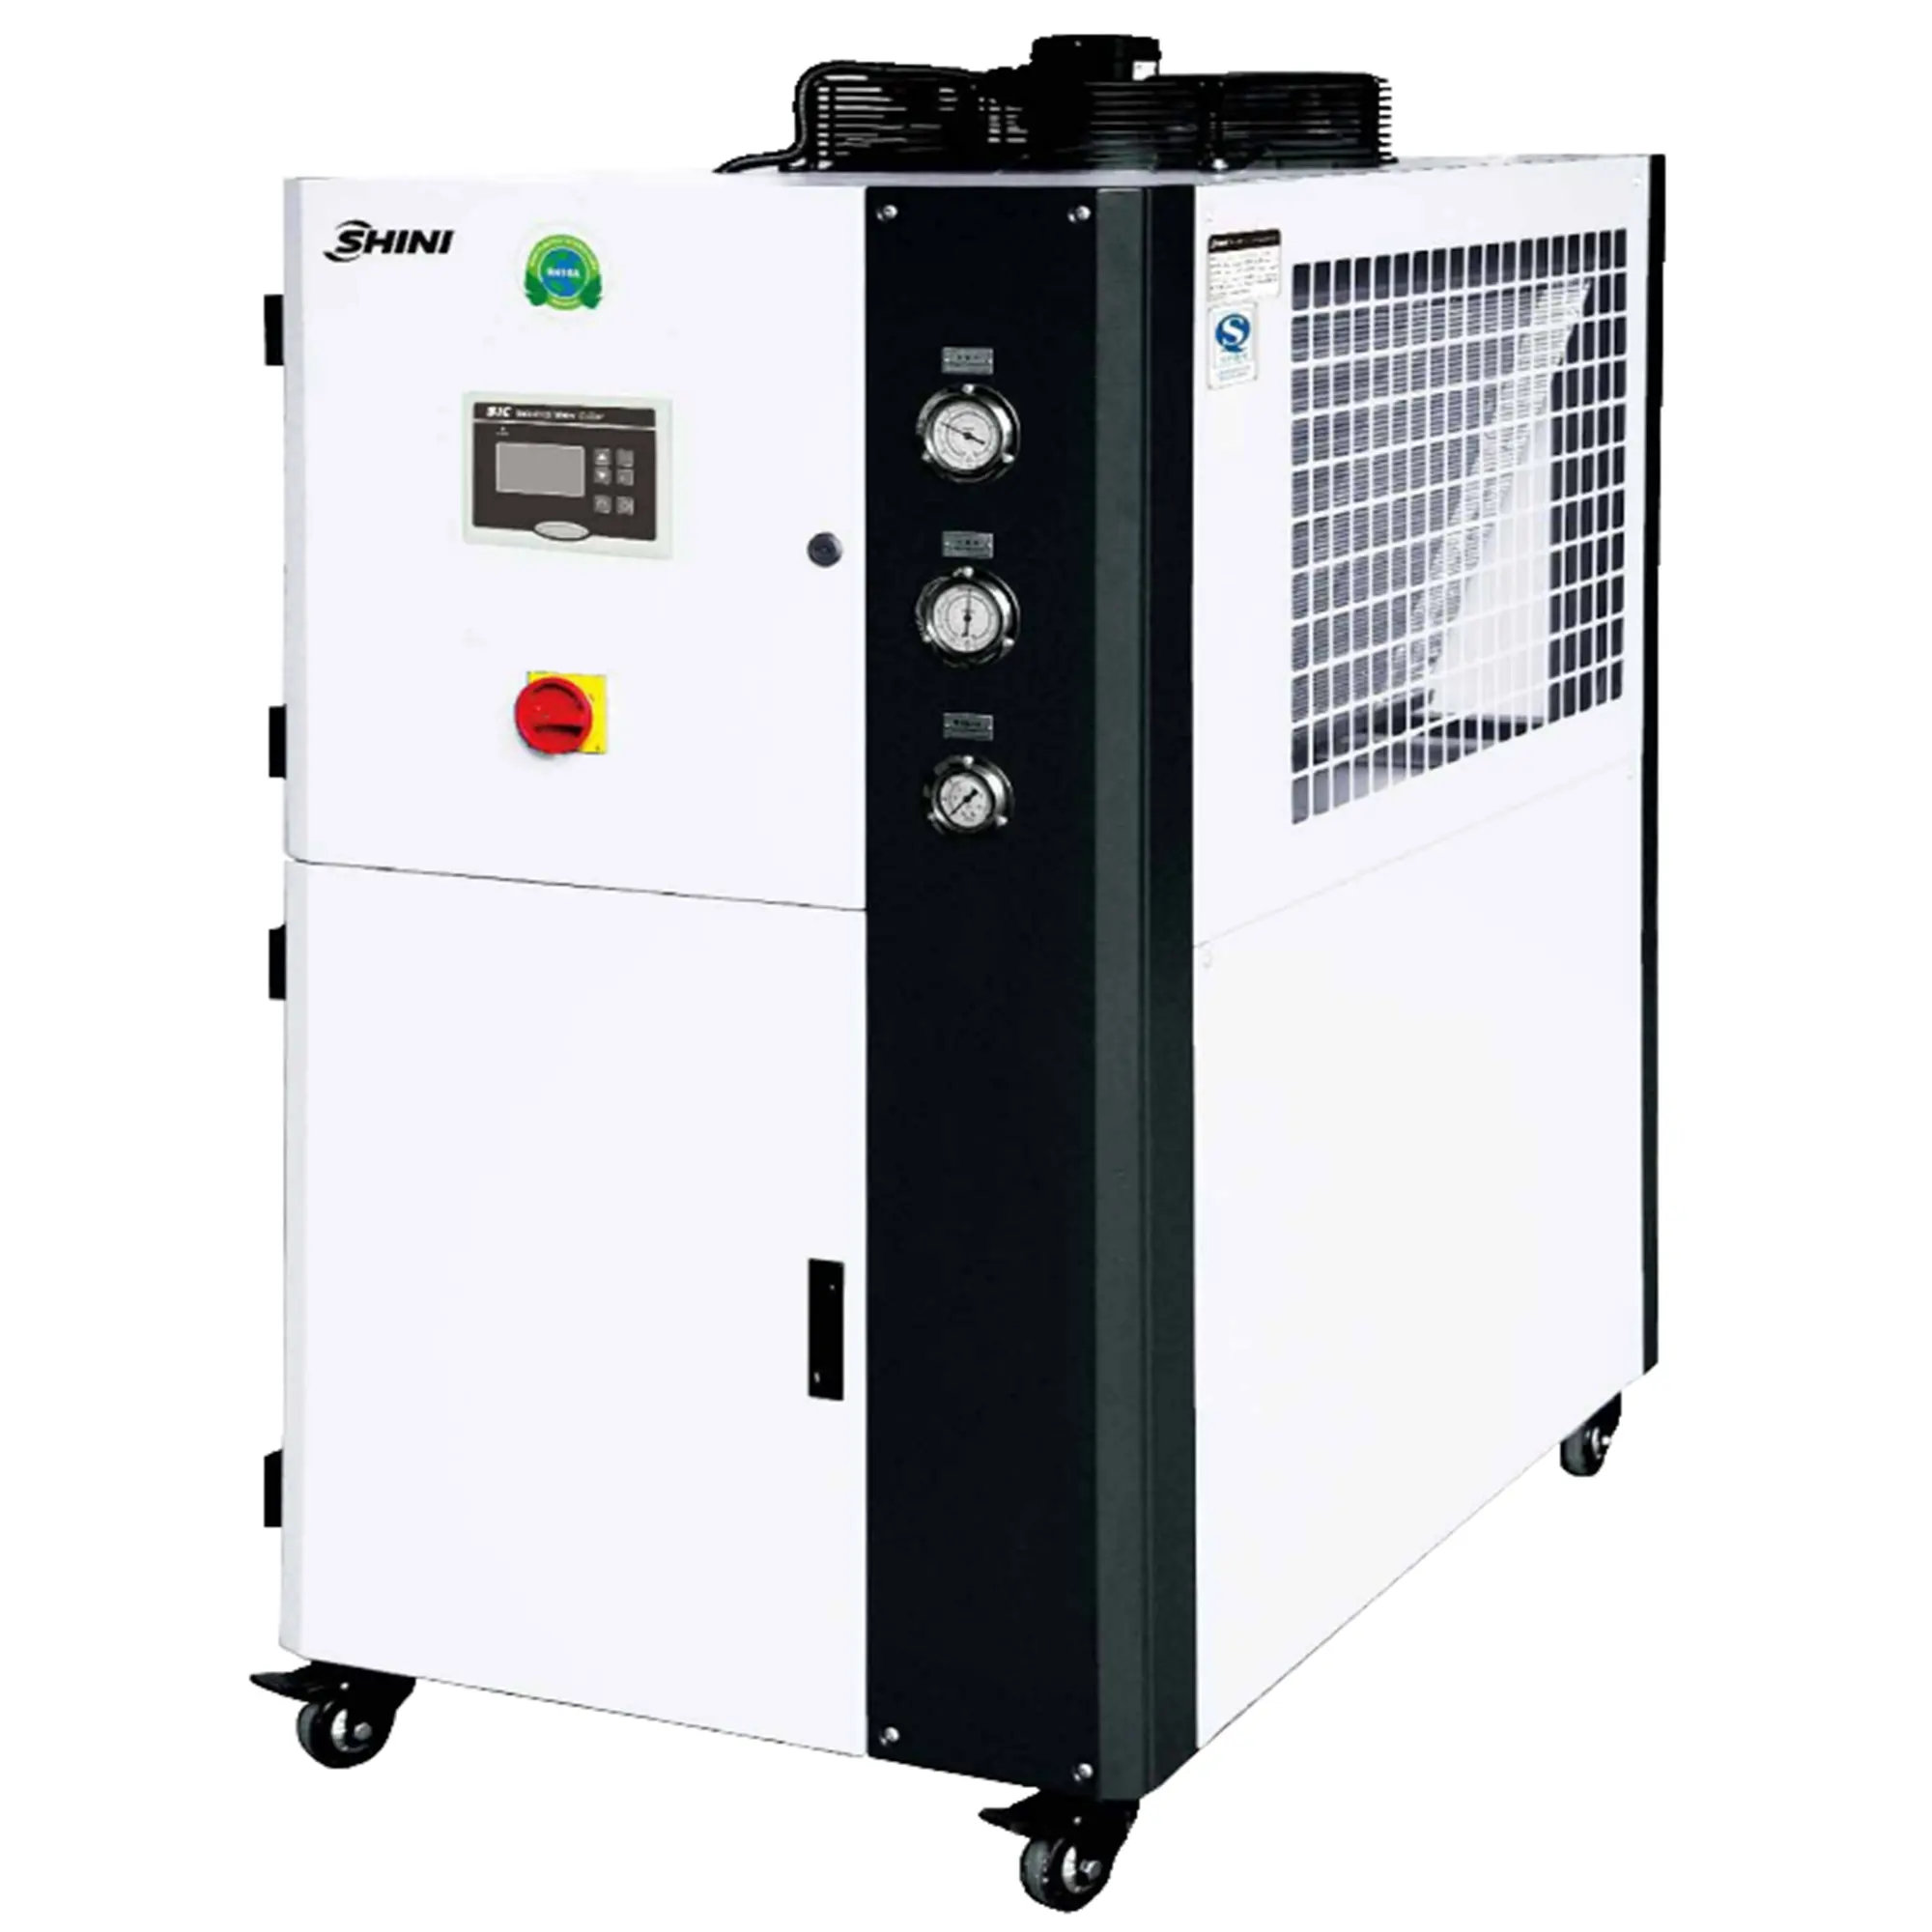 SHINI 20 Tonnen Scroll Box Typ 20 PS Luftgekühlter Wasserkühler für die industrielle Kühlung